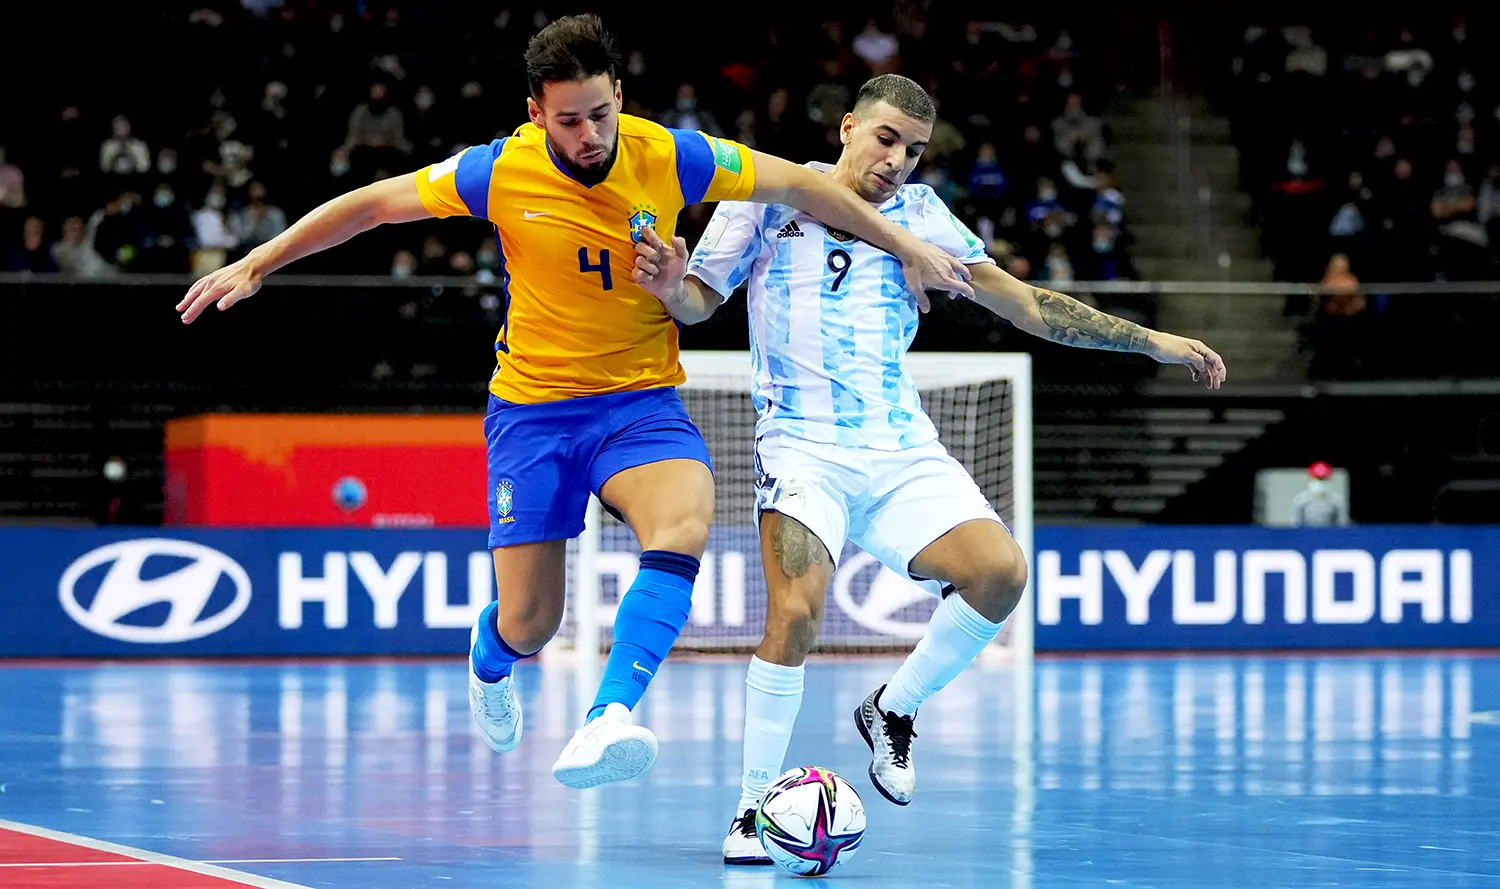 Aturan dan Ketentuan Bermain Futsal